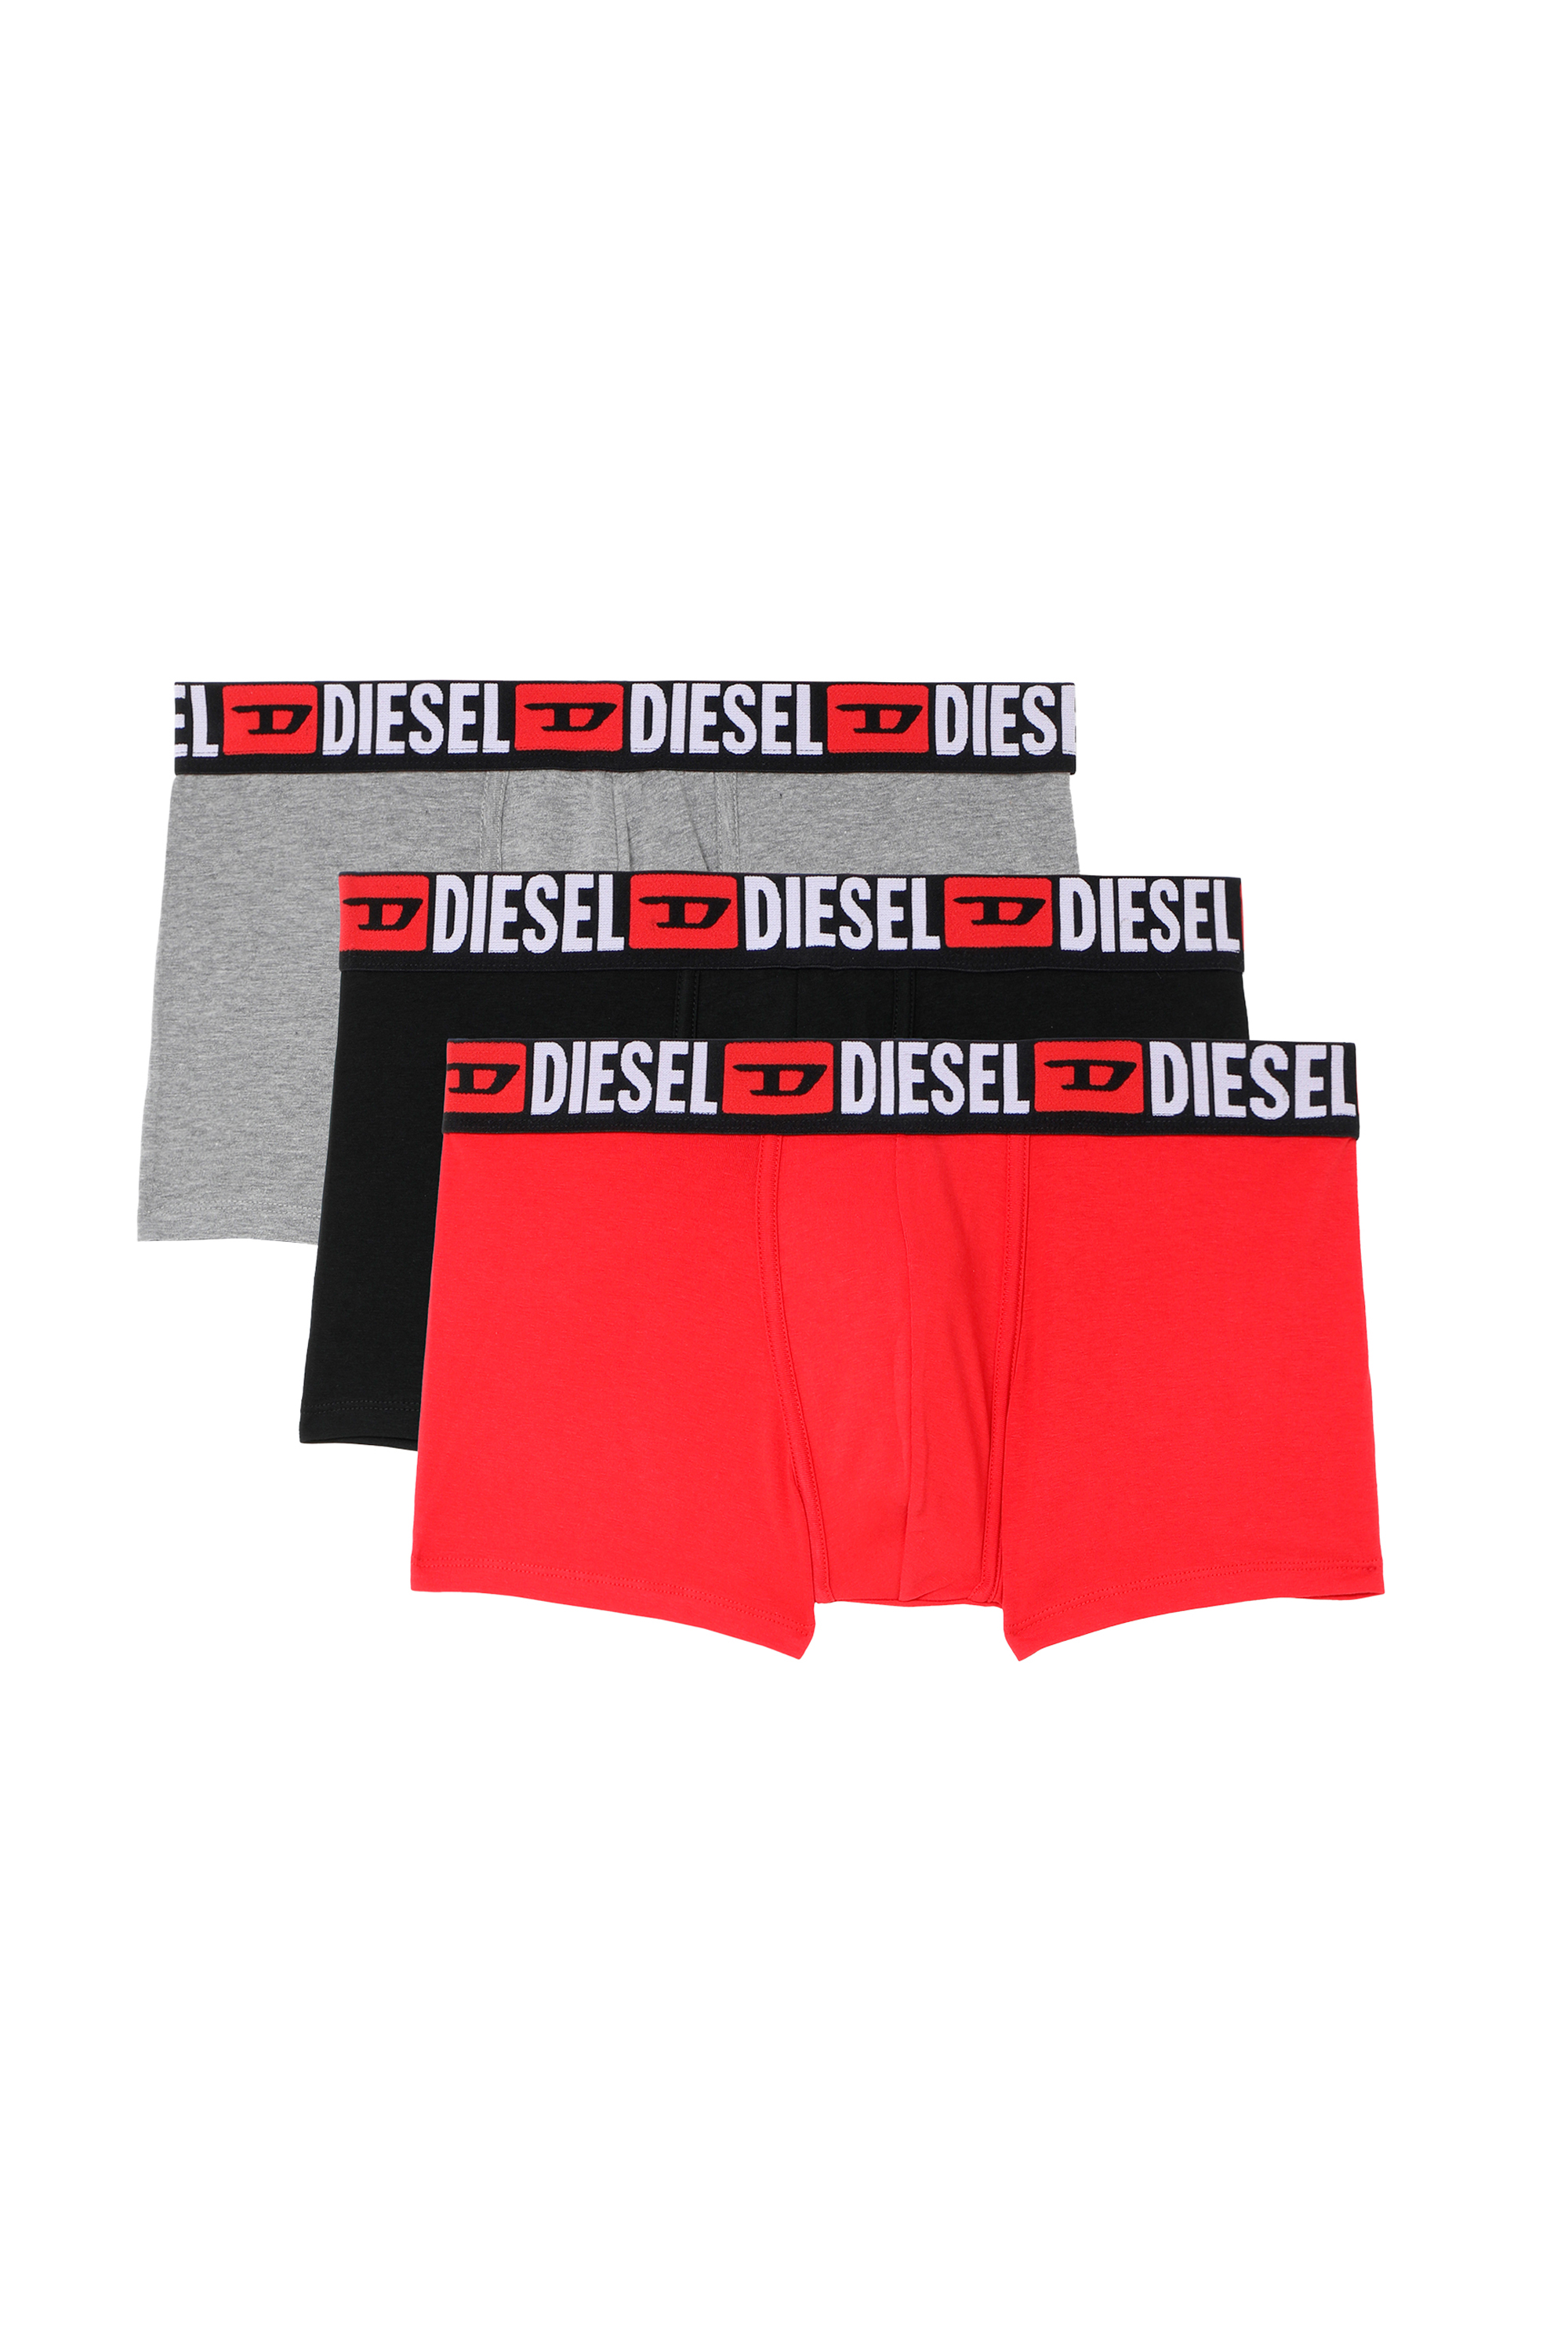 Diesel Men: Jeans, Jackets, Sneakers, T shirts | Diesel